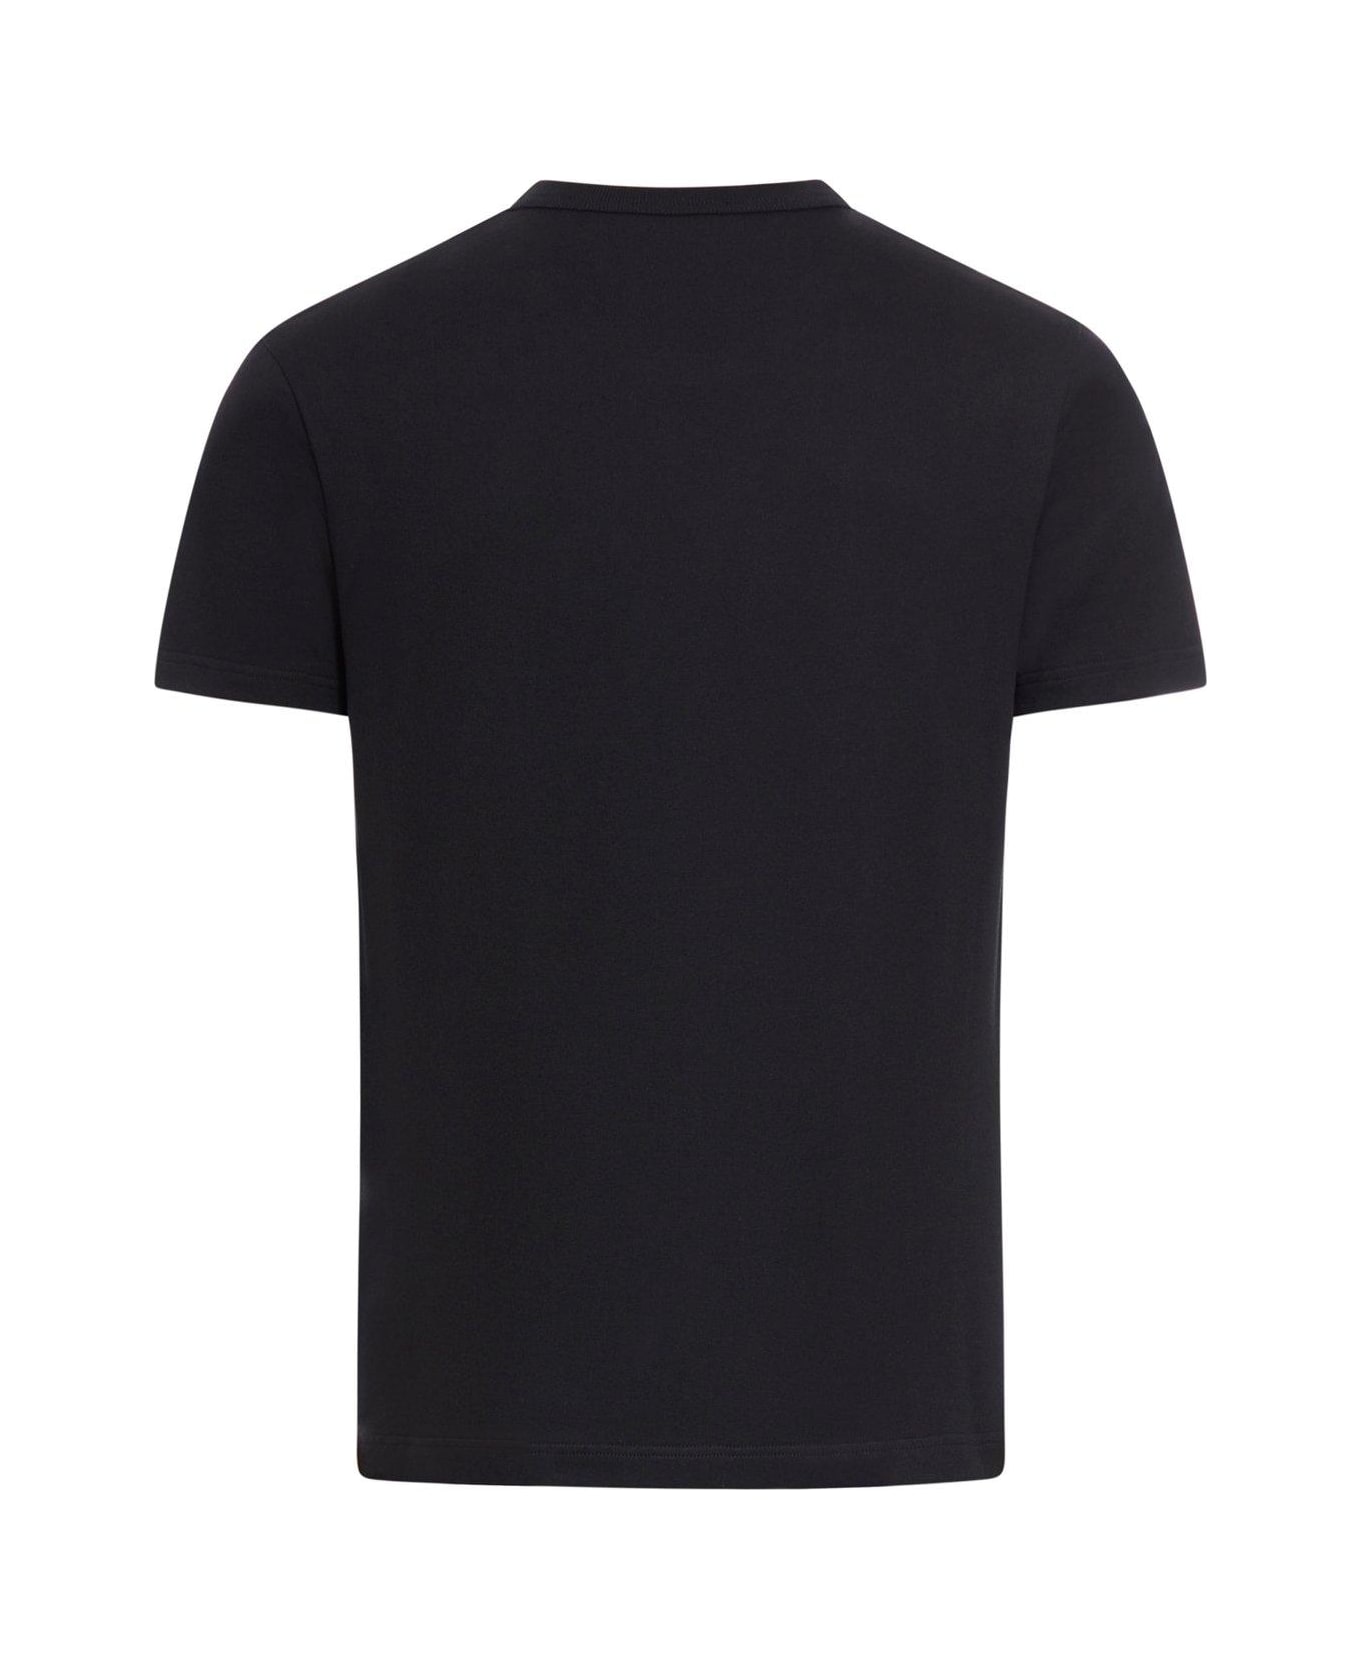 Alexander McQueen Skull Logo T-shirt - Black White